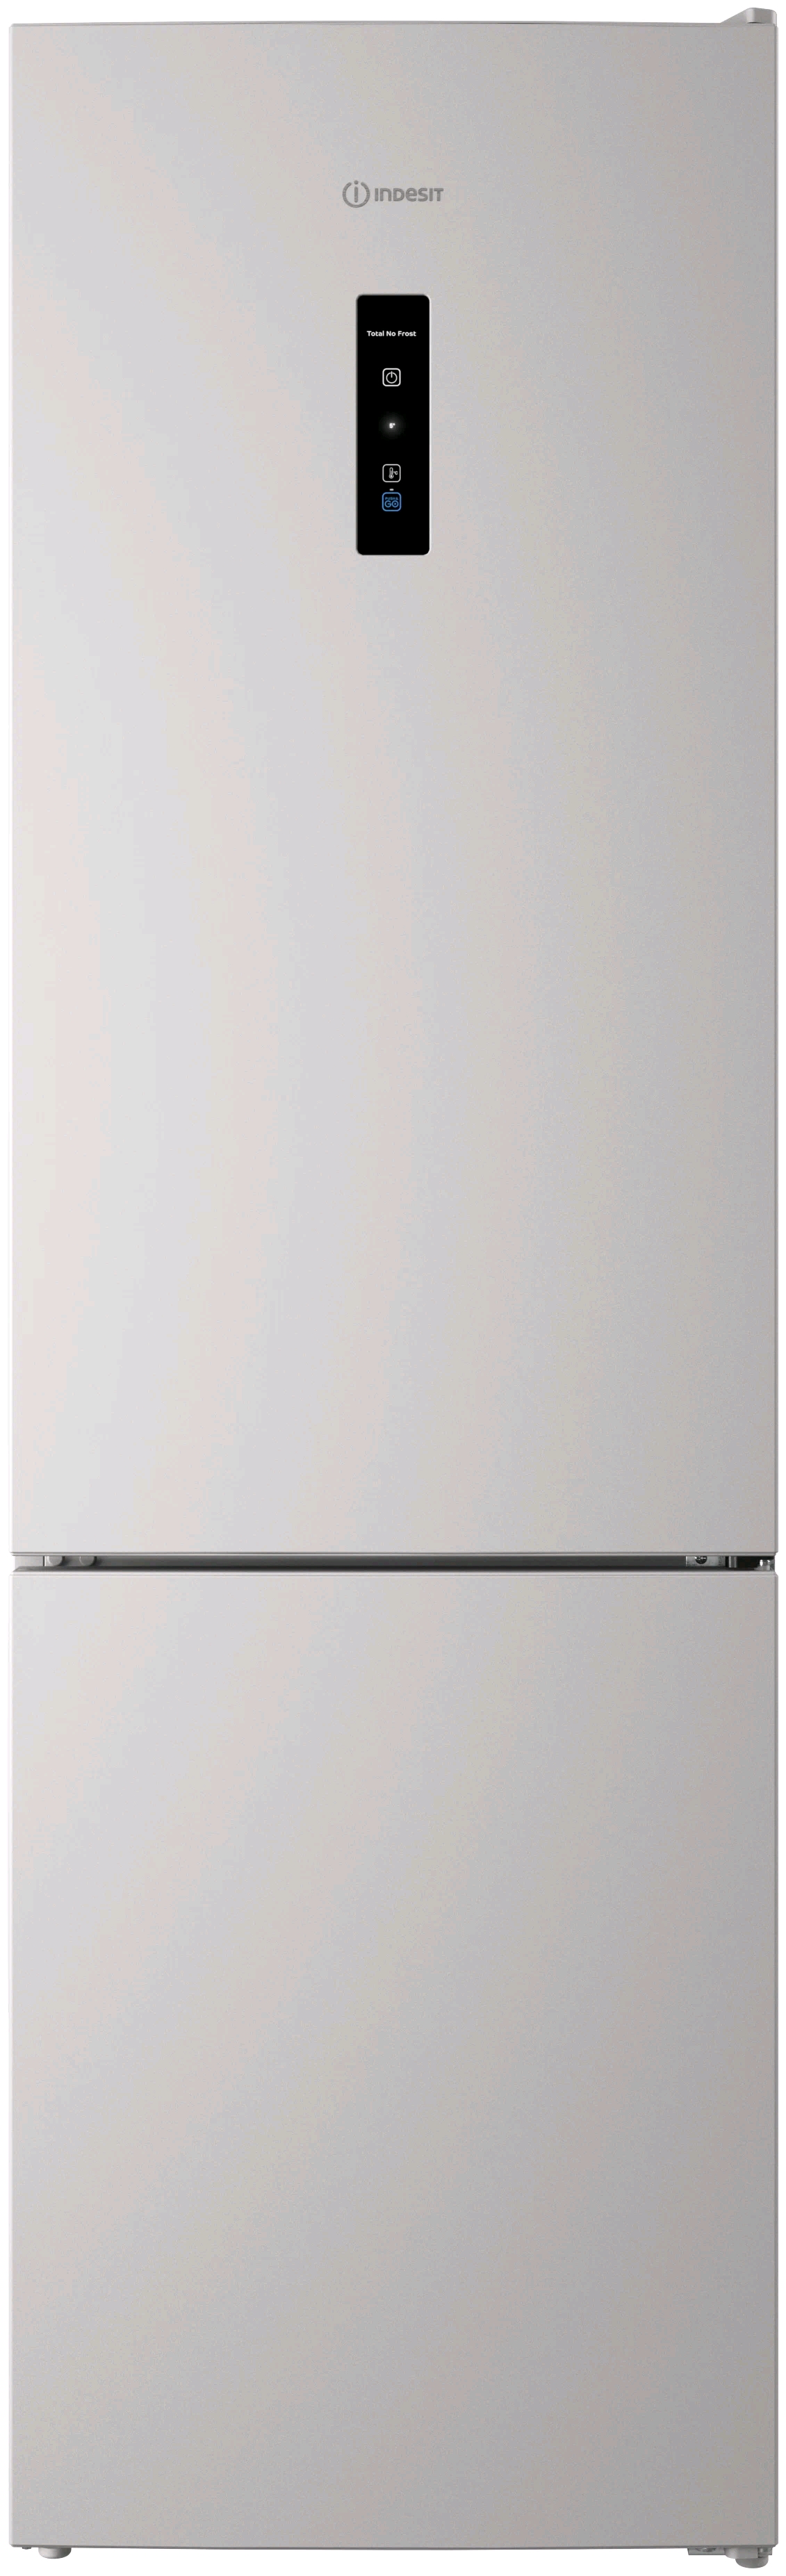 Indesit ITR 5200 W холодильник